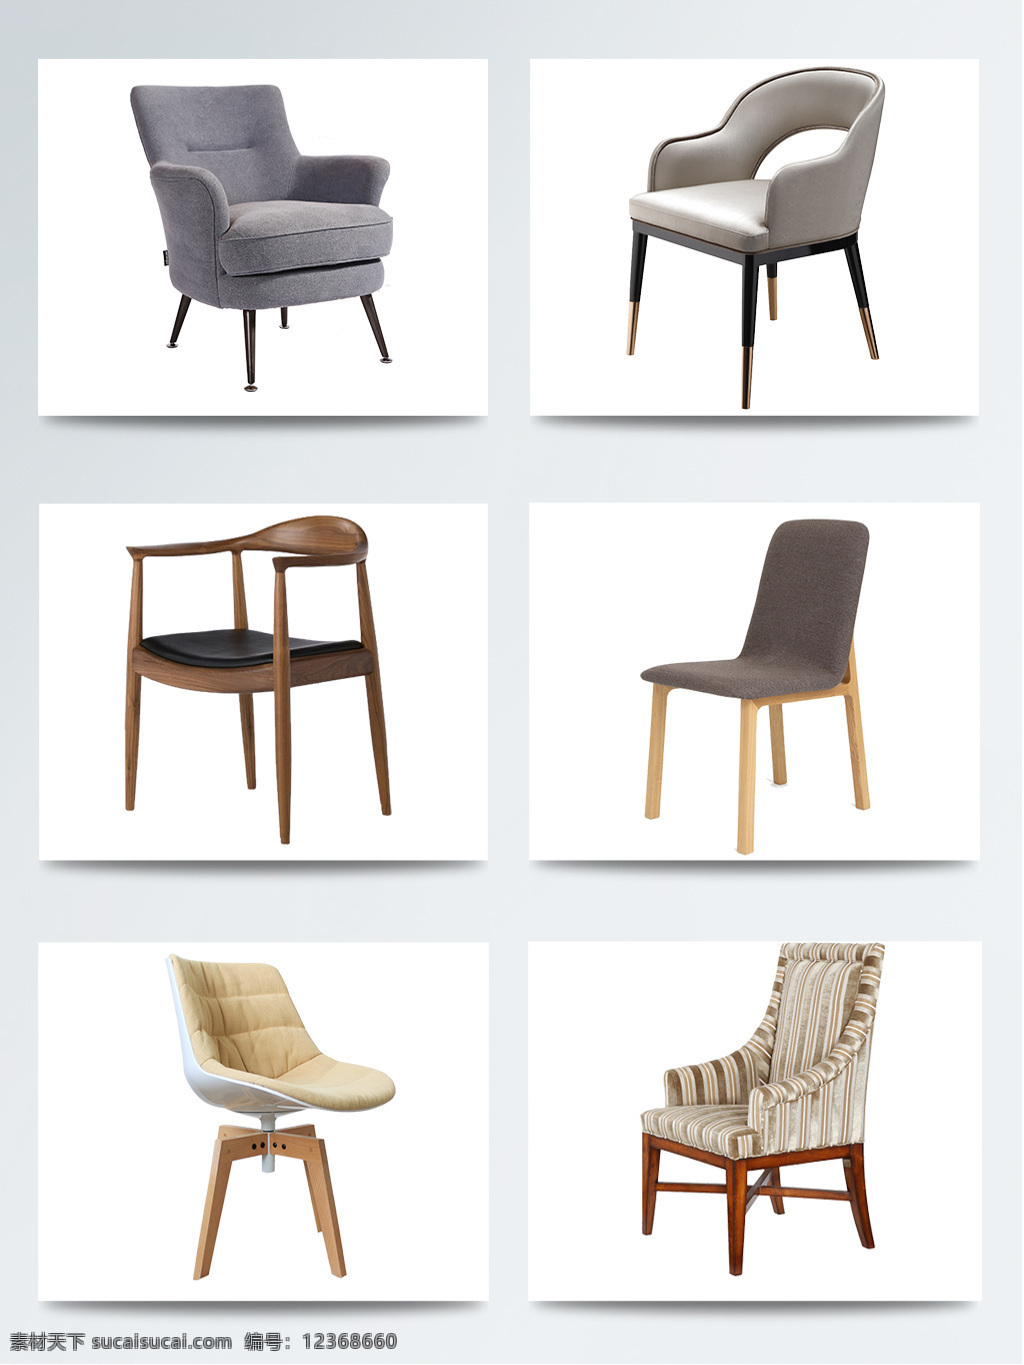 实物椅子元素 产品设计 创意 凳子 家居 家装 家装节 简约沙发 生活椅子 新年惠 椅子 用品